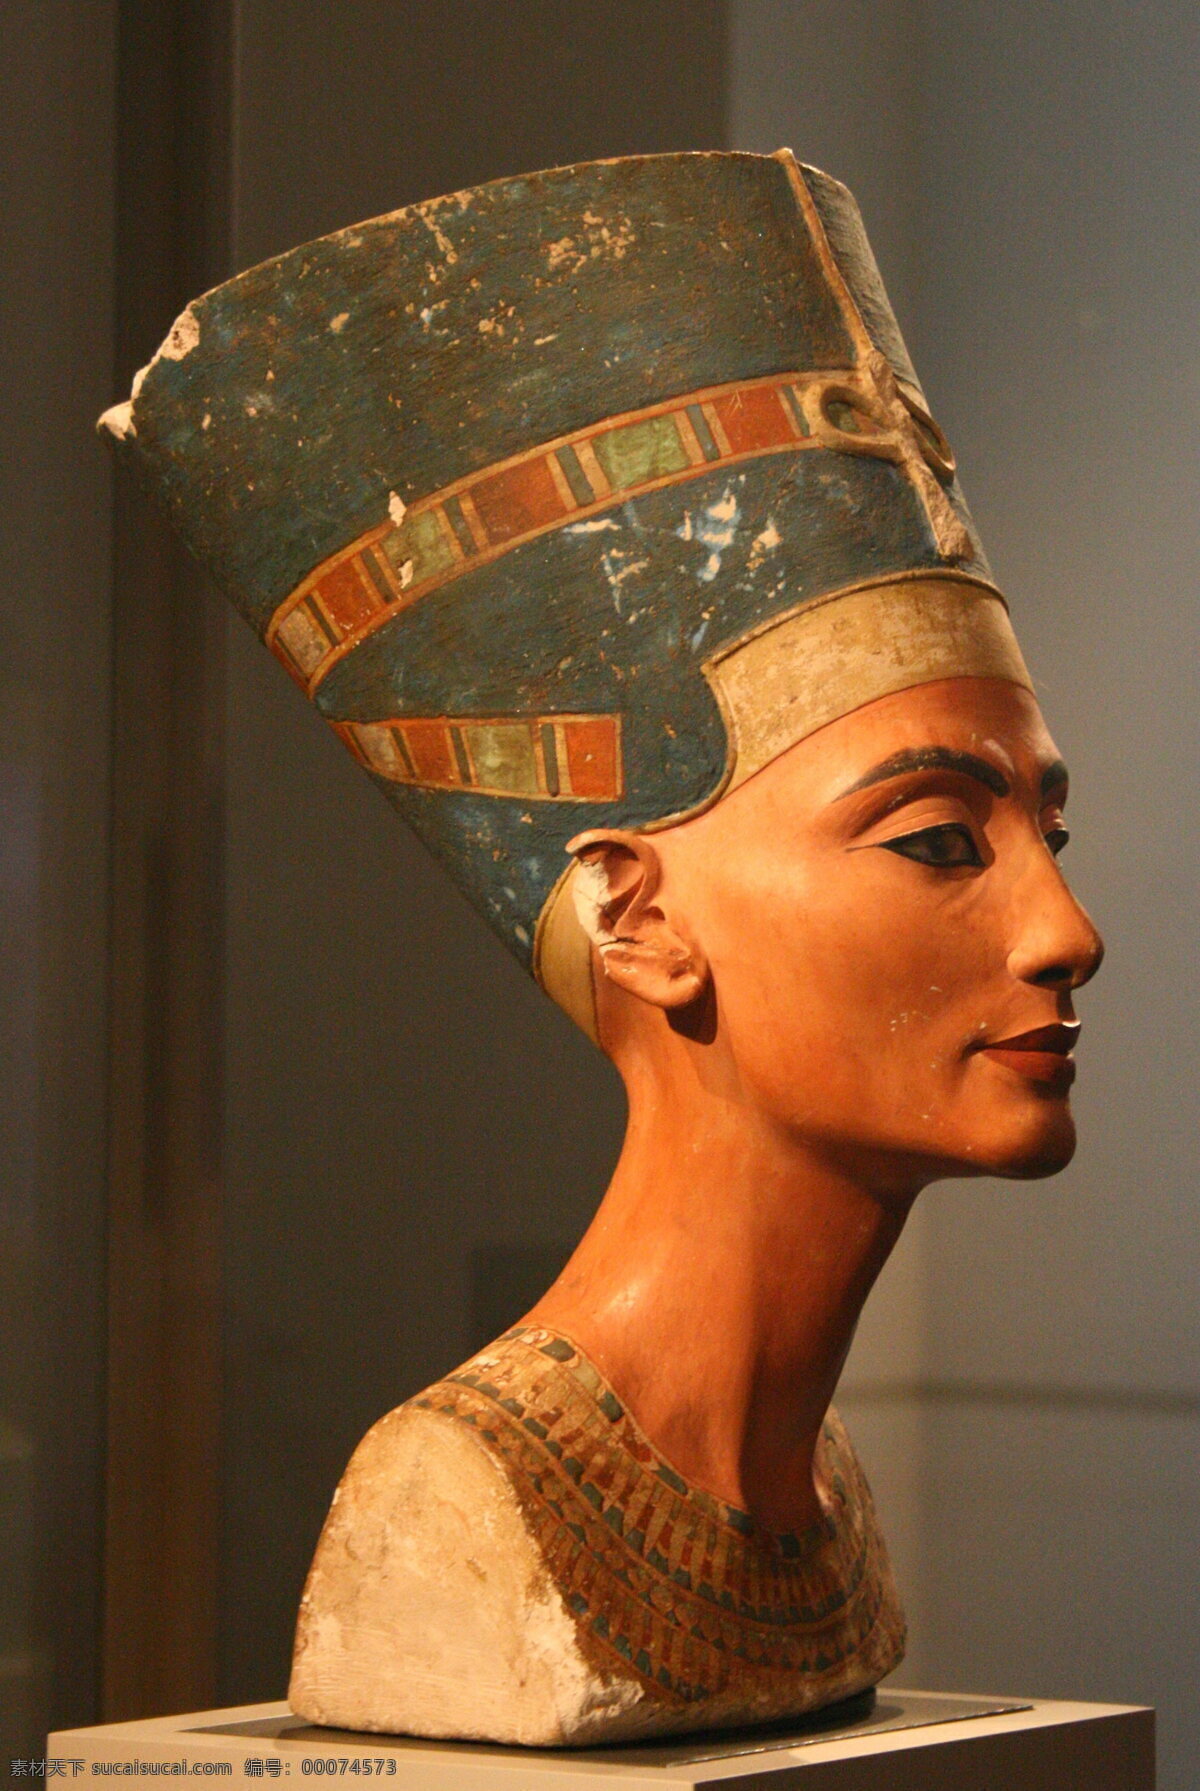 纳 芙 蒂 王后 雕像 埃及 法老 皇后 纳芙蒂蒂 nofretete 雕塑 博物馆 文物 考古 镇馆之宝 文化艺术